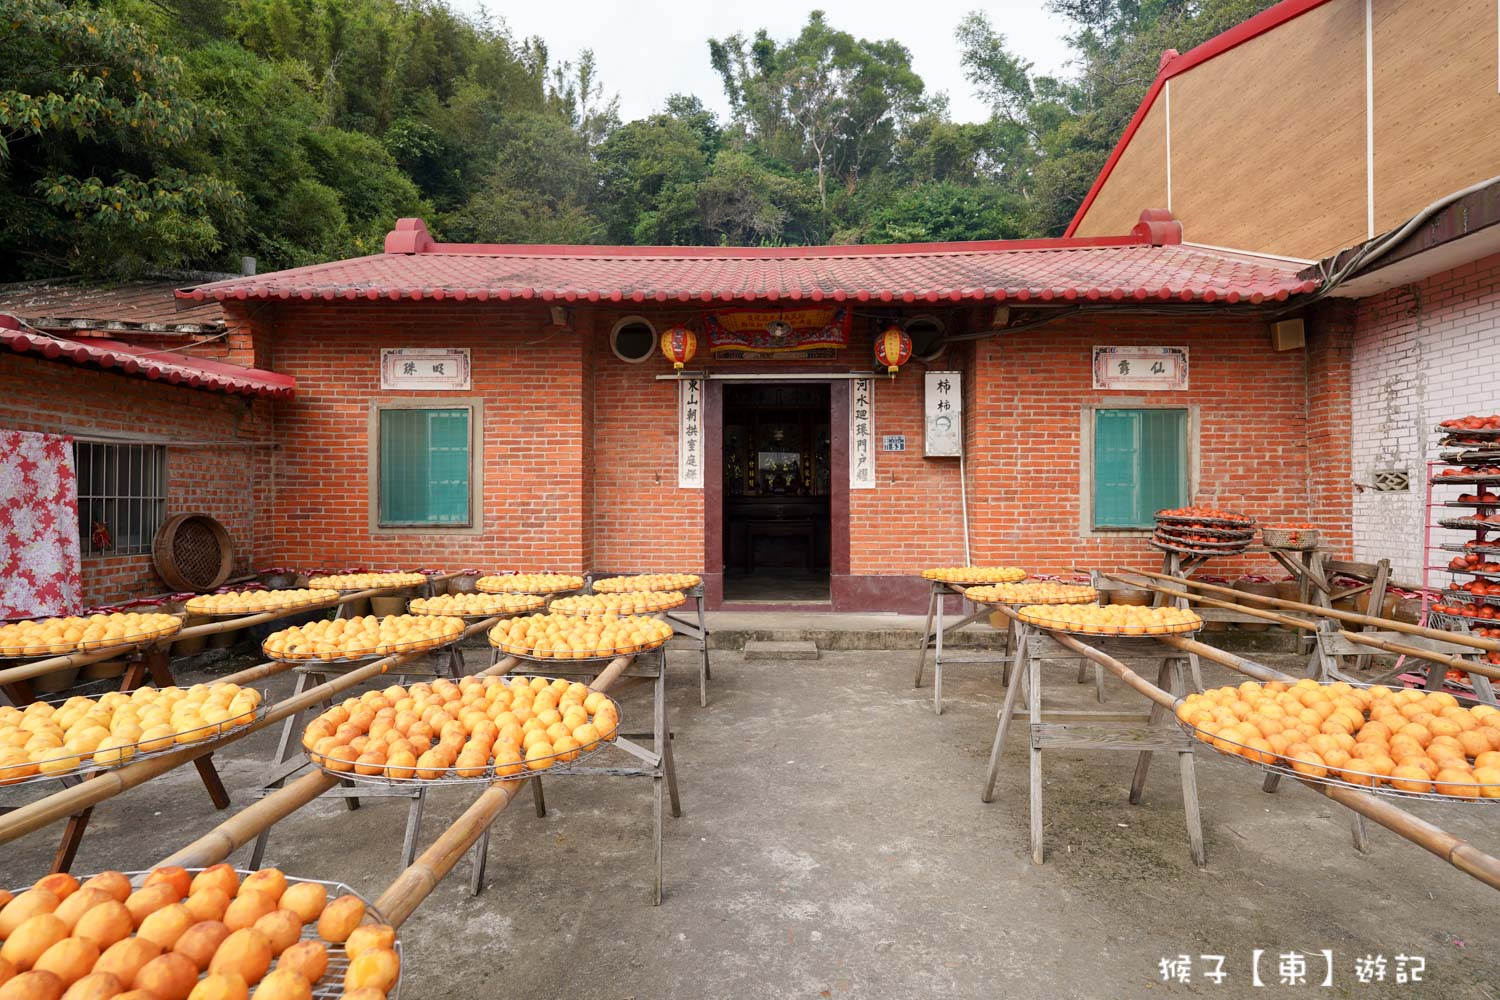 網站近期文章：[新竹] 味衛佳柿餅教育農園 免費參觀 拍照 試吃新埔特產柿餅 壯觀的曬柿場超美